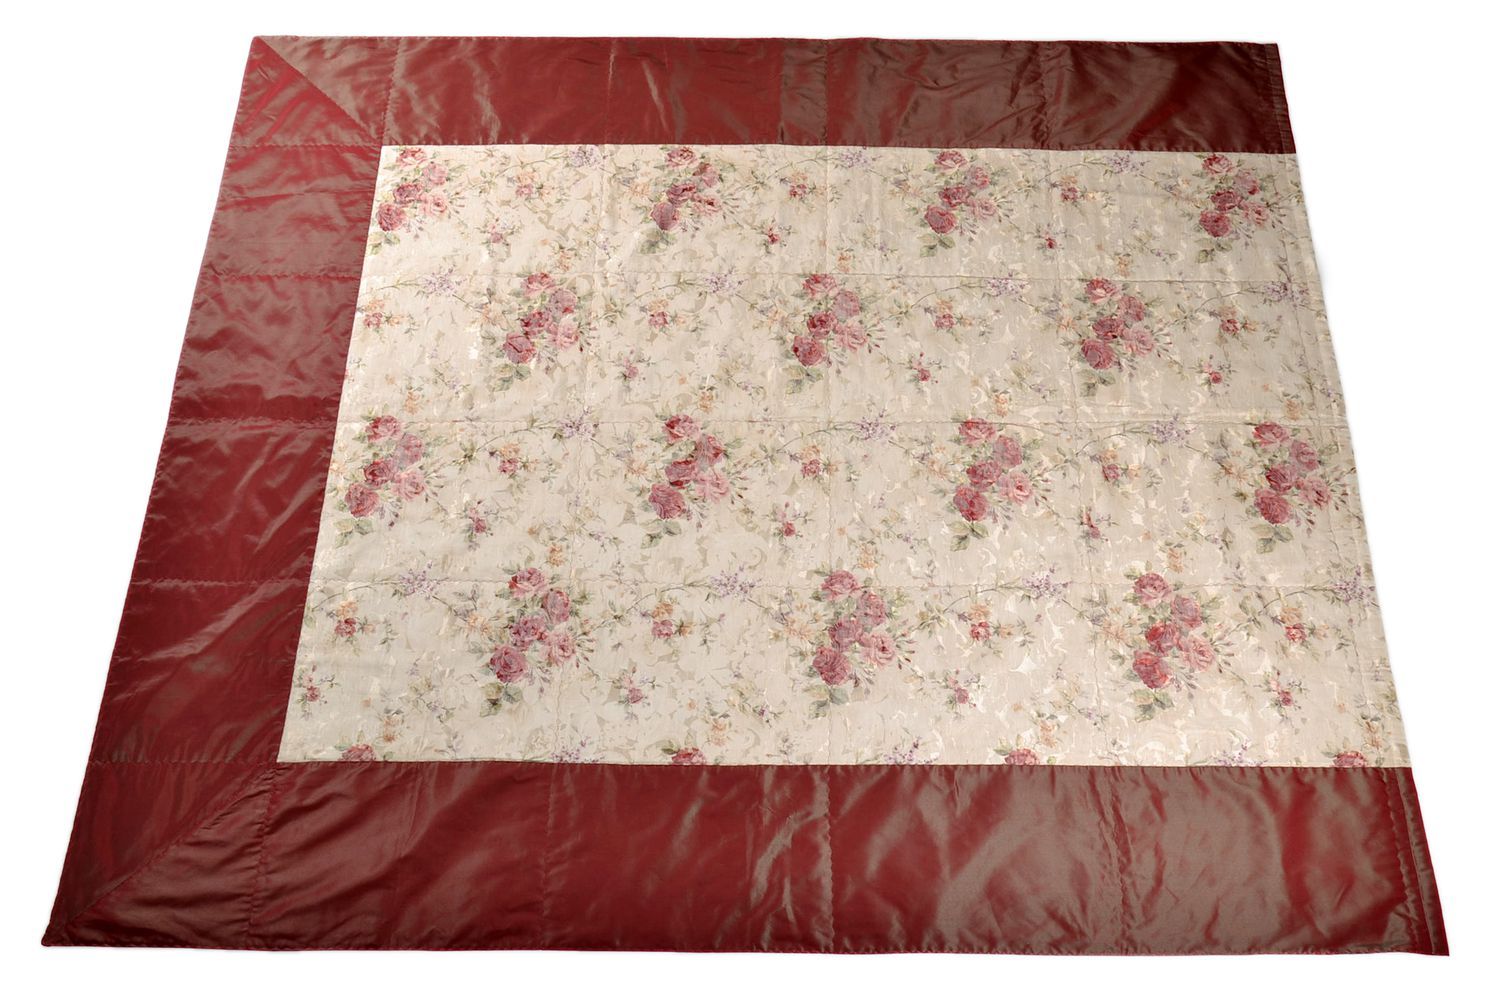 Couvre-lit artisanal rouge avec fleurs à deux places photo 3